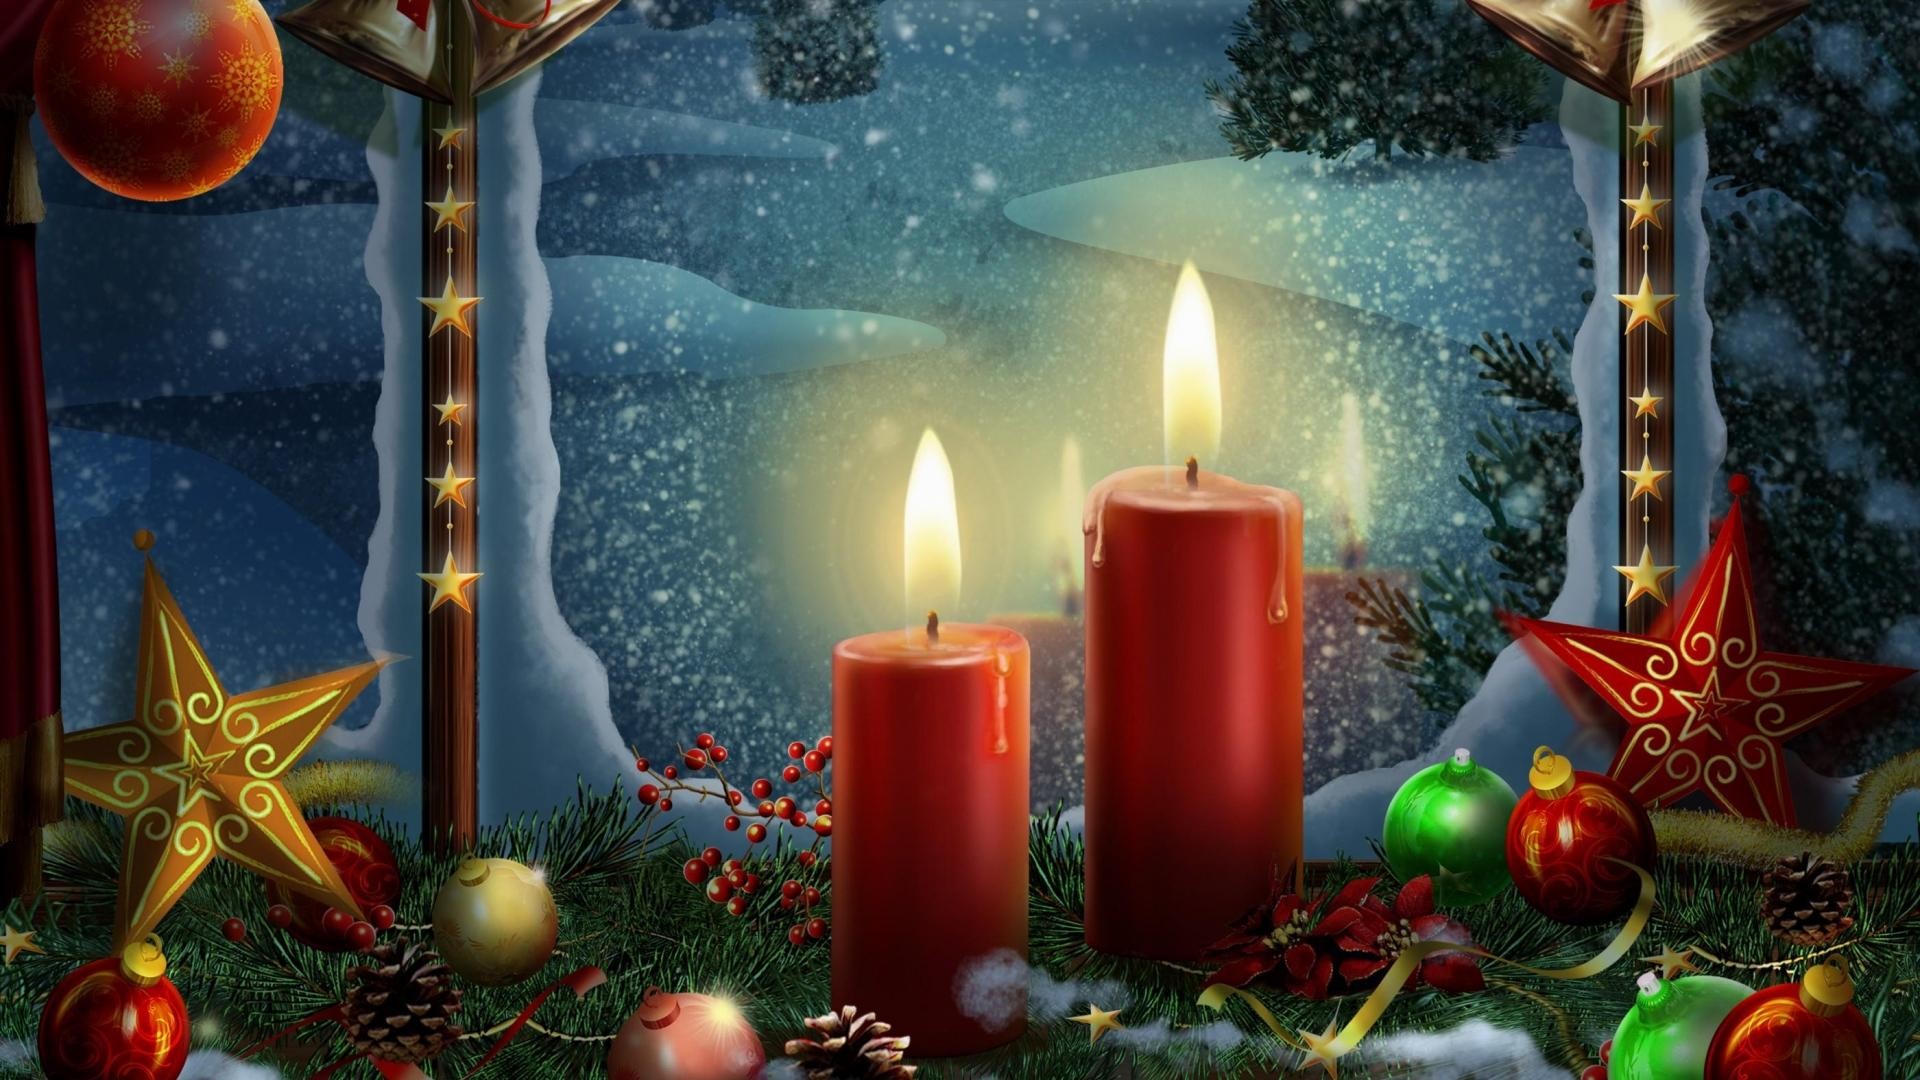 tapete weihnachten,weihnachten,heiligabend,beleuchtung,kerze,weihnachtsdekoration